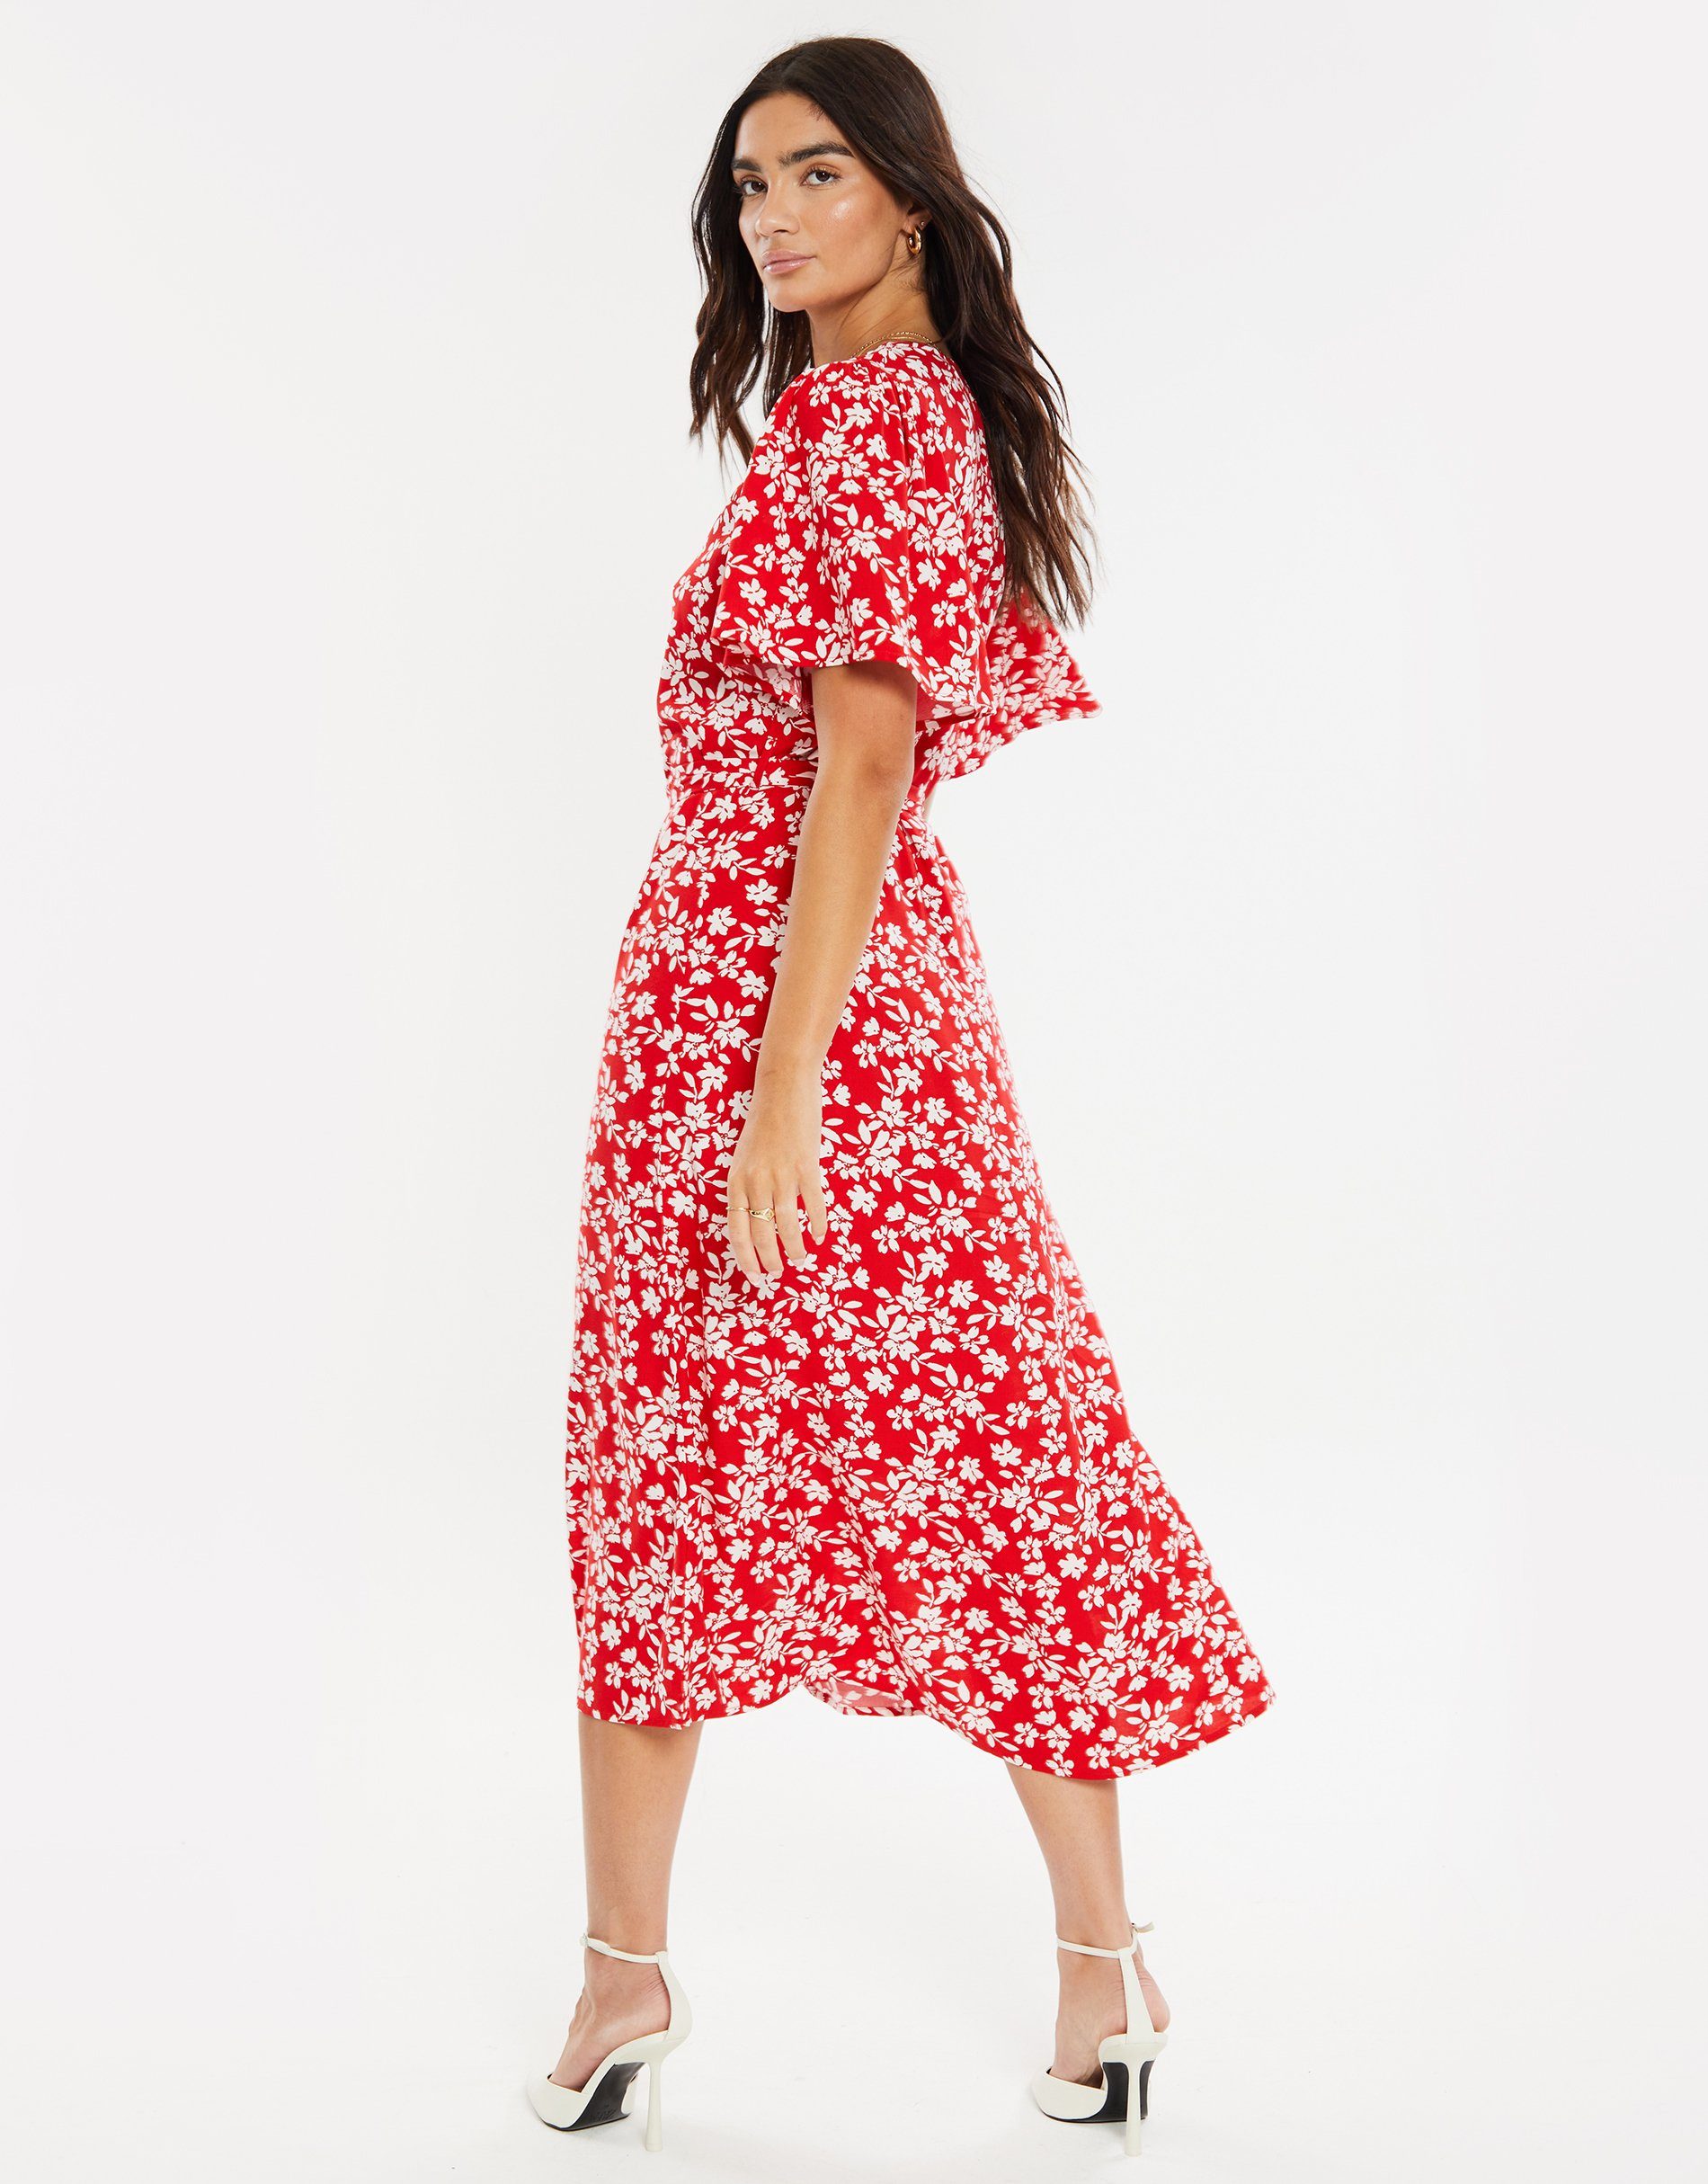 Pastill Sommerkleid Button Red Threadbare Spot - Dress rot Midi Fruit THB gepunktet